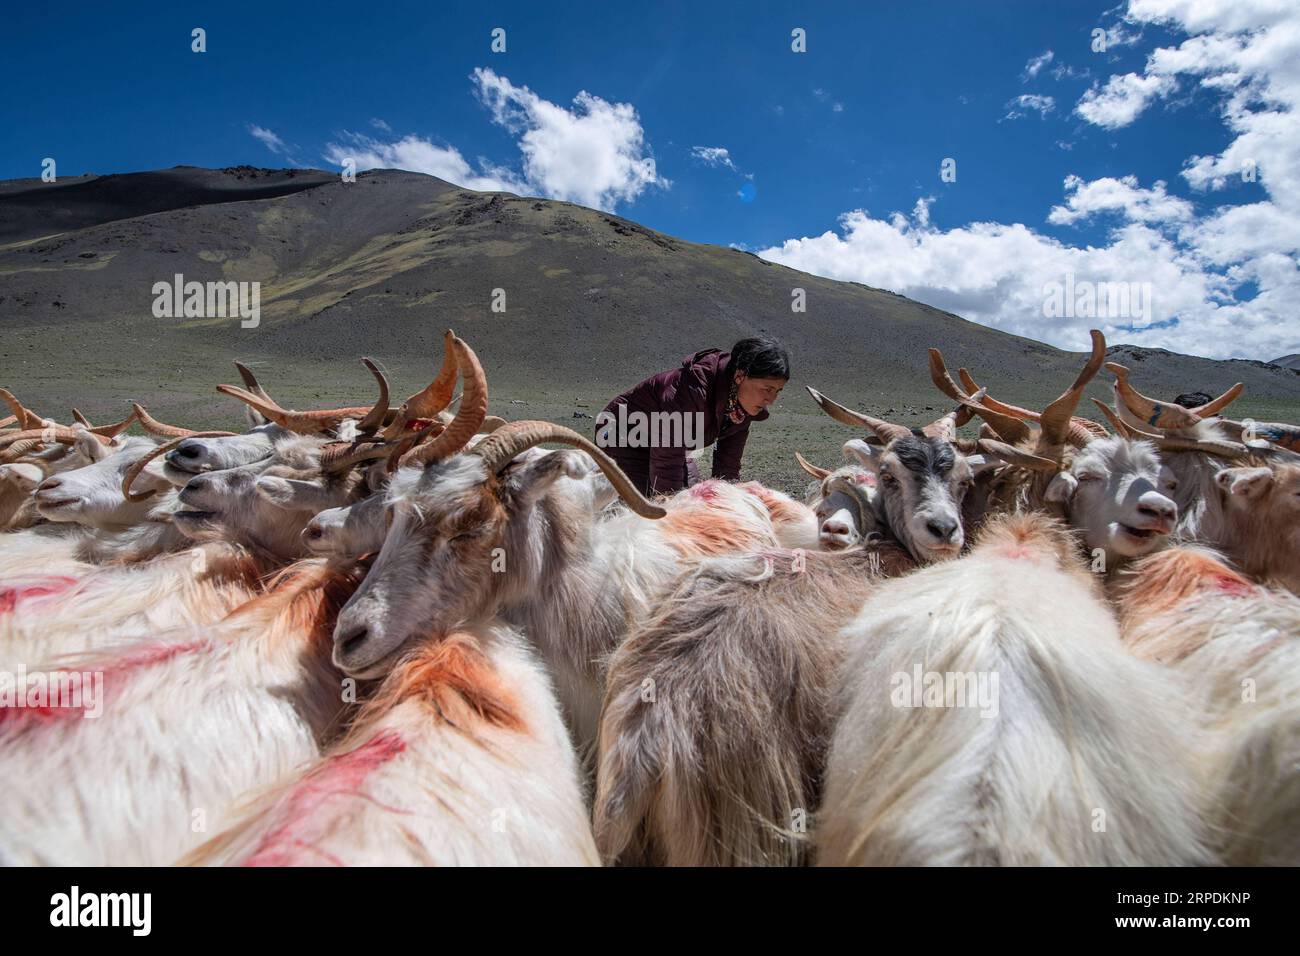 (190807) -- PEKING, 7. August 2019 -- Eine Hirtin melkt Schafe im Rutog County der Präfektur Ngari, südwestchinesische Autonome Region Tibet, 4. August 2019. Chinas Landwirtschaft hat in den letzten 70 Jahren ein rasches Wachstum verzeichnet, wobei die Getreideproduktion laut einem Bericht des National Bureau of Statistics (NBS) um das 4,8-fache zunahm. Chinas Getreideproduktion wuchs von 1949 bis 2018 mit einer durchschnittlichen jährlichen Rate von 2,6 Prozent auf 658 Milliarden kg und konnte laut dem Bericht rund 20 Prozent der Weltbevölkerung mit nur 9 Prozent Ackerland ernähren. Der Countr Stockfoto